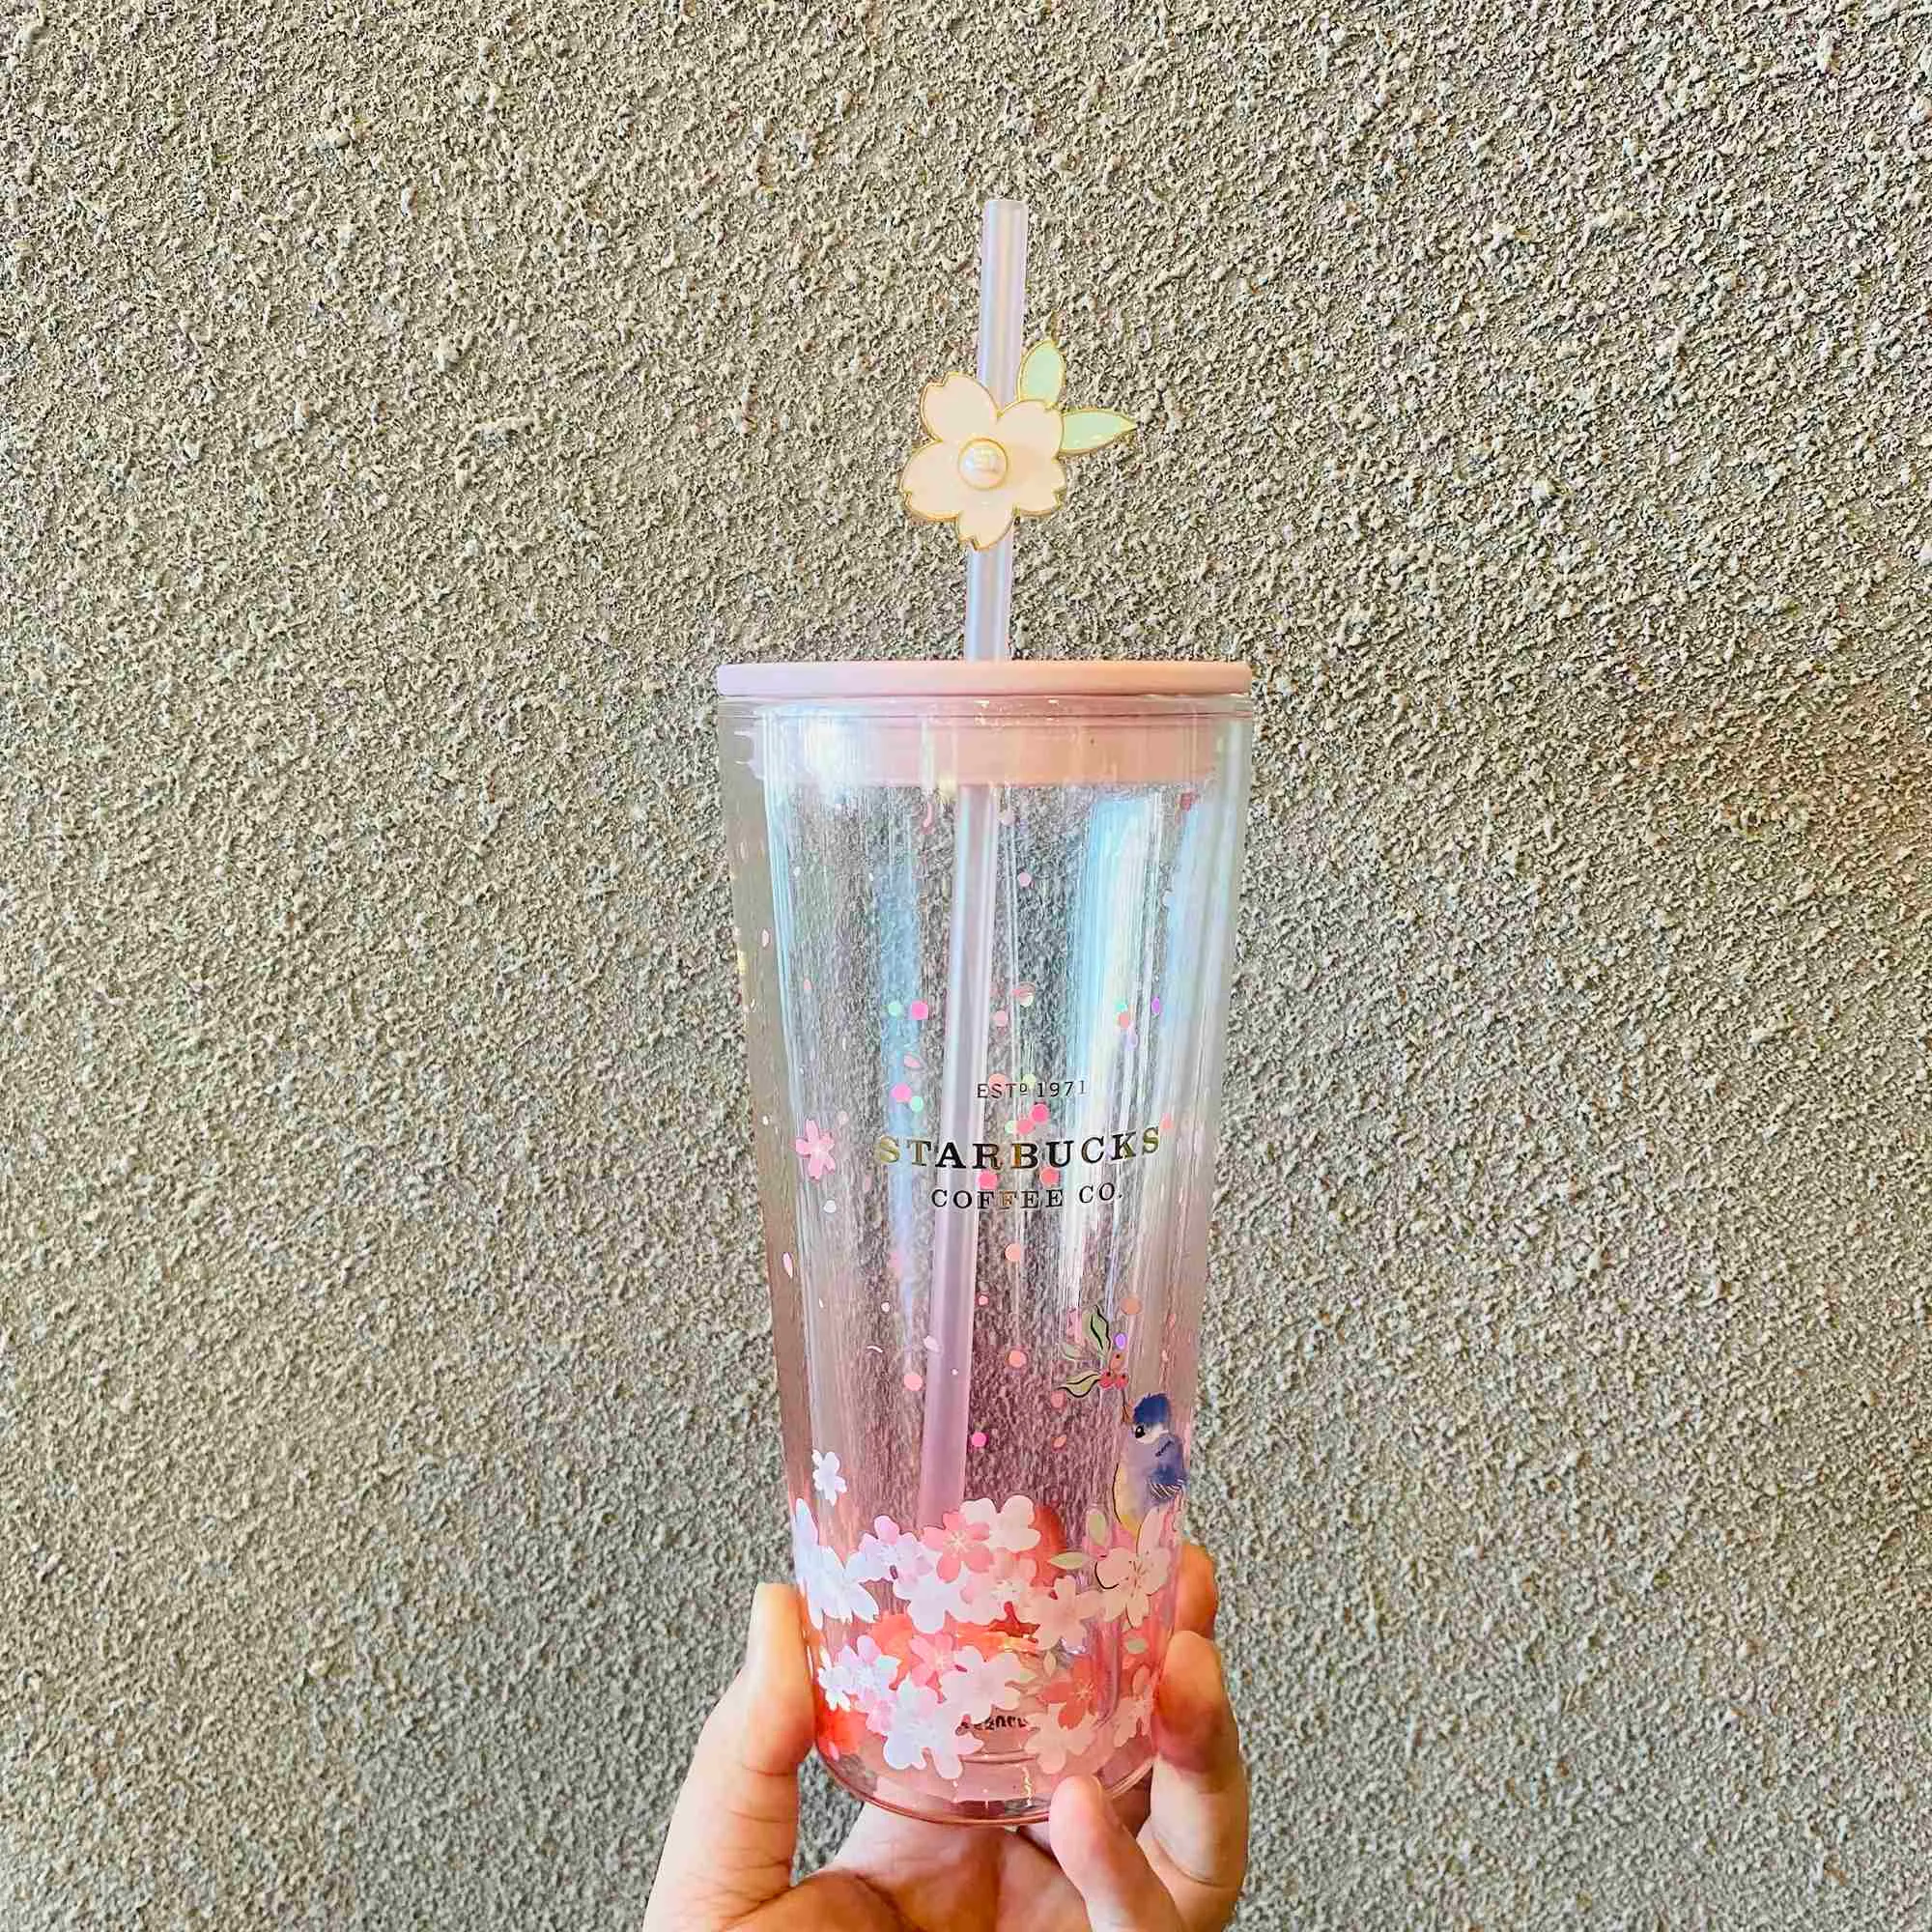 Kubek Starbucks 2022 sezon kwiatów wiśni 591ml śpiew ptaków i zapach kwiatów różowy przezroczysty podwójny szklany kubek ze słomką